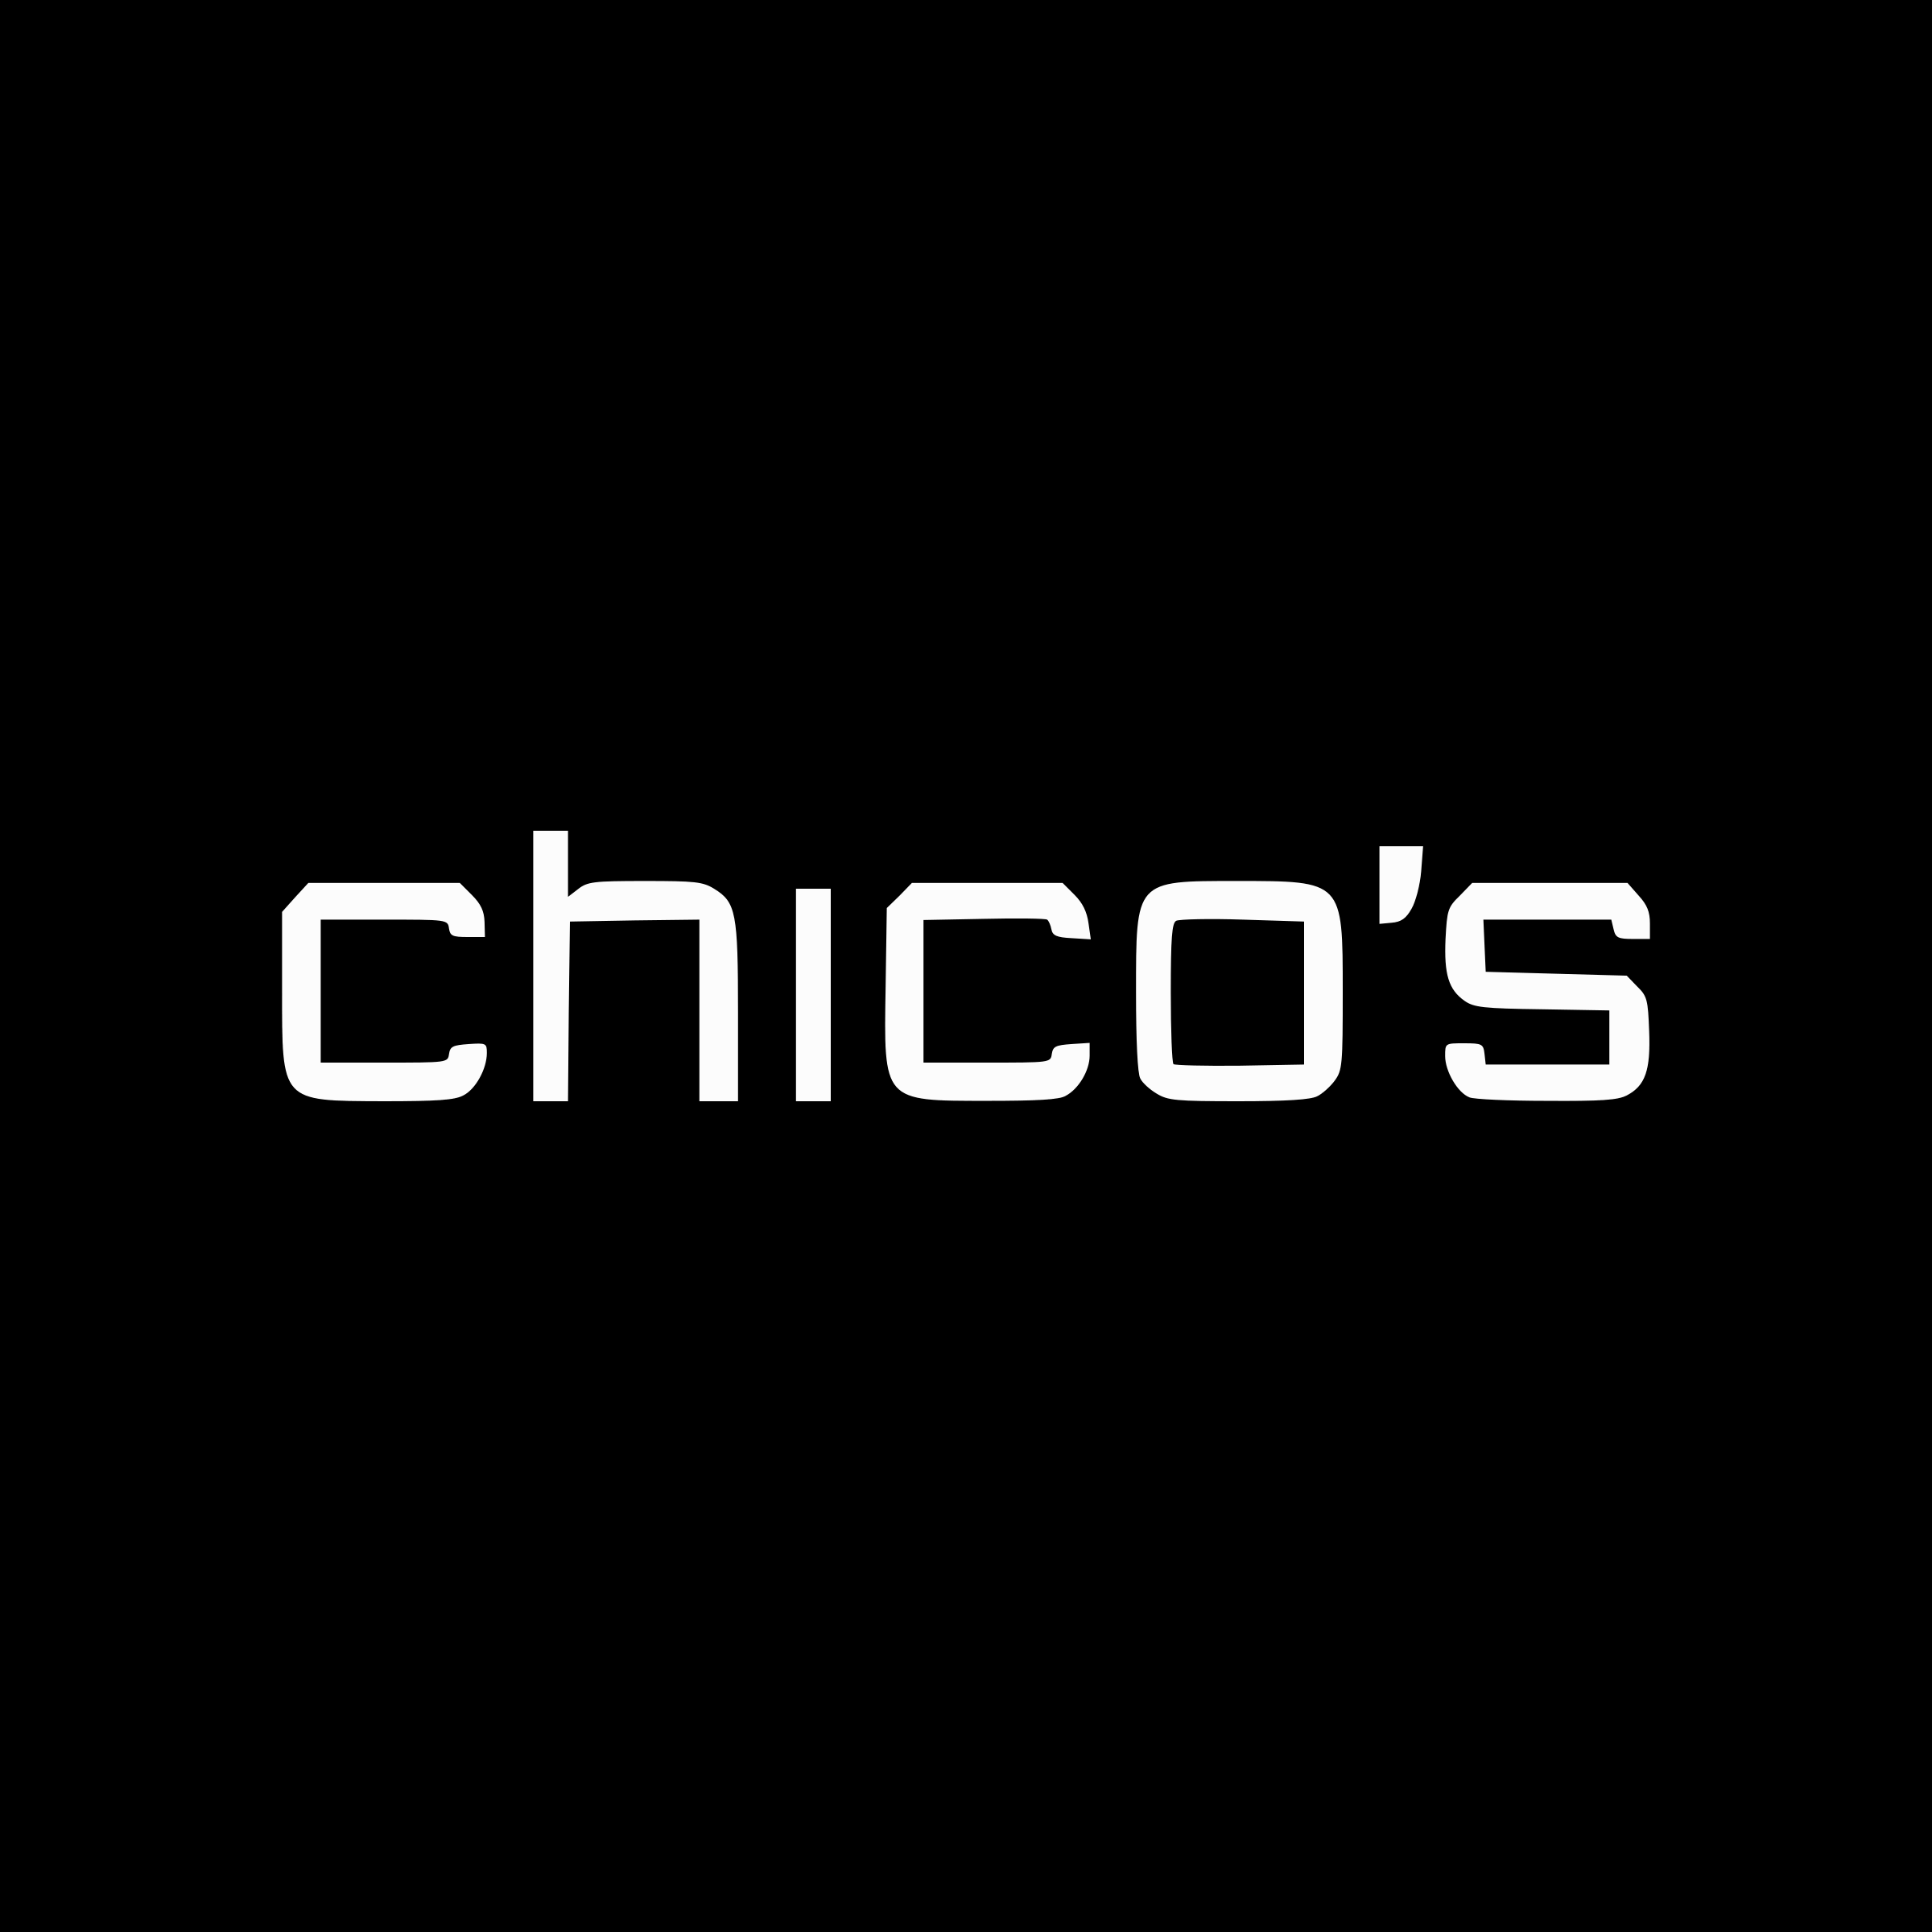 Chico's Logo - Chicos Logo PNG Transparent & SVG Vector